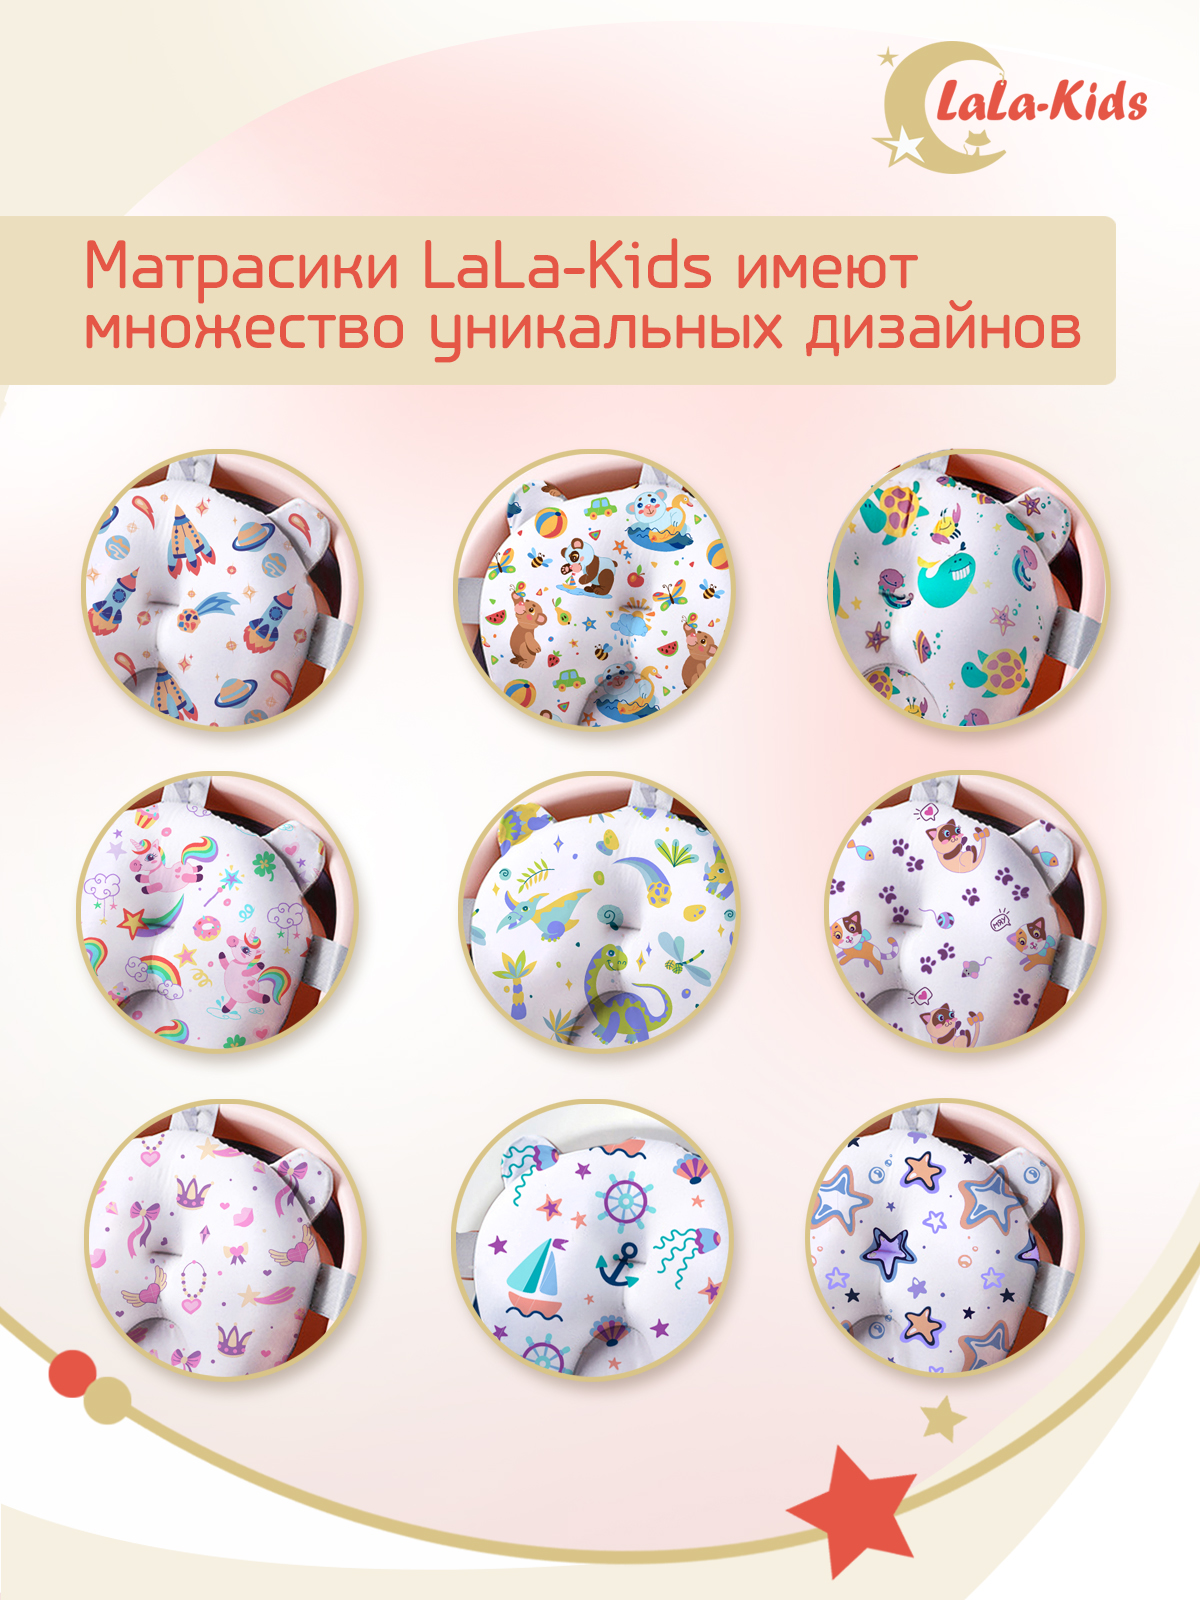 Детская ванночка LaLa-Kids складная с матрасиком персиковым в комплекте - фото 19